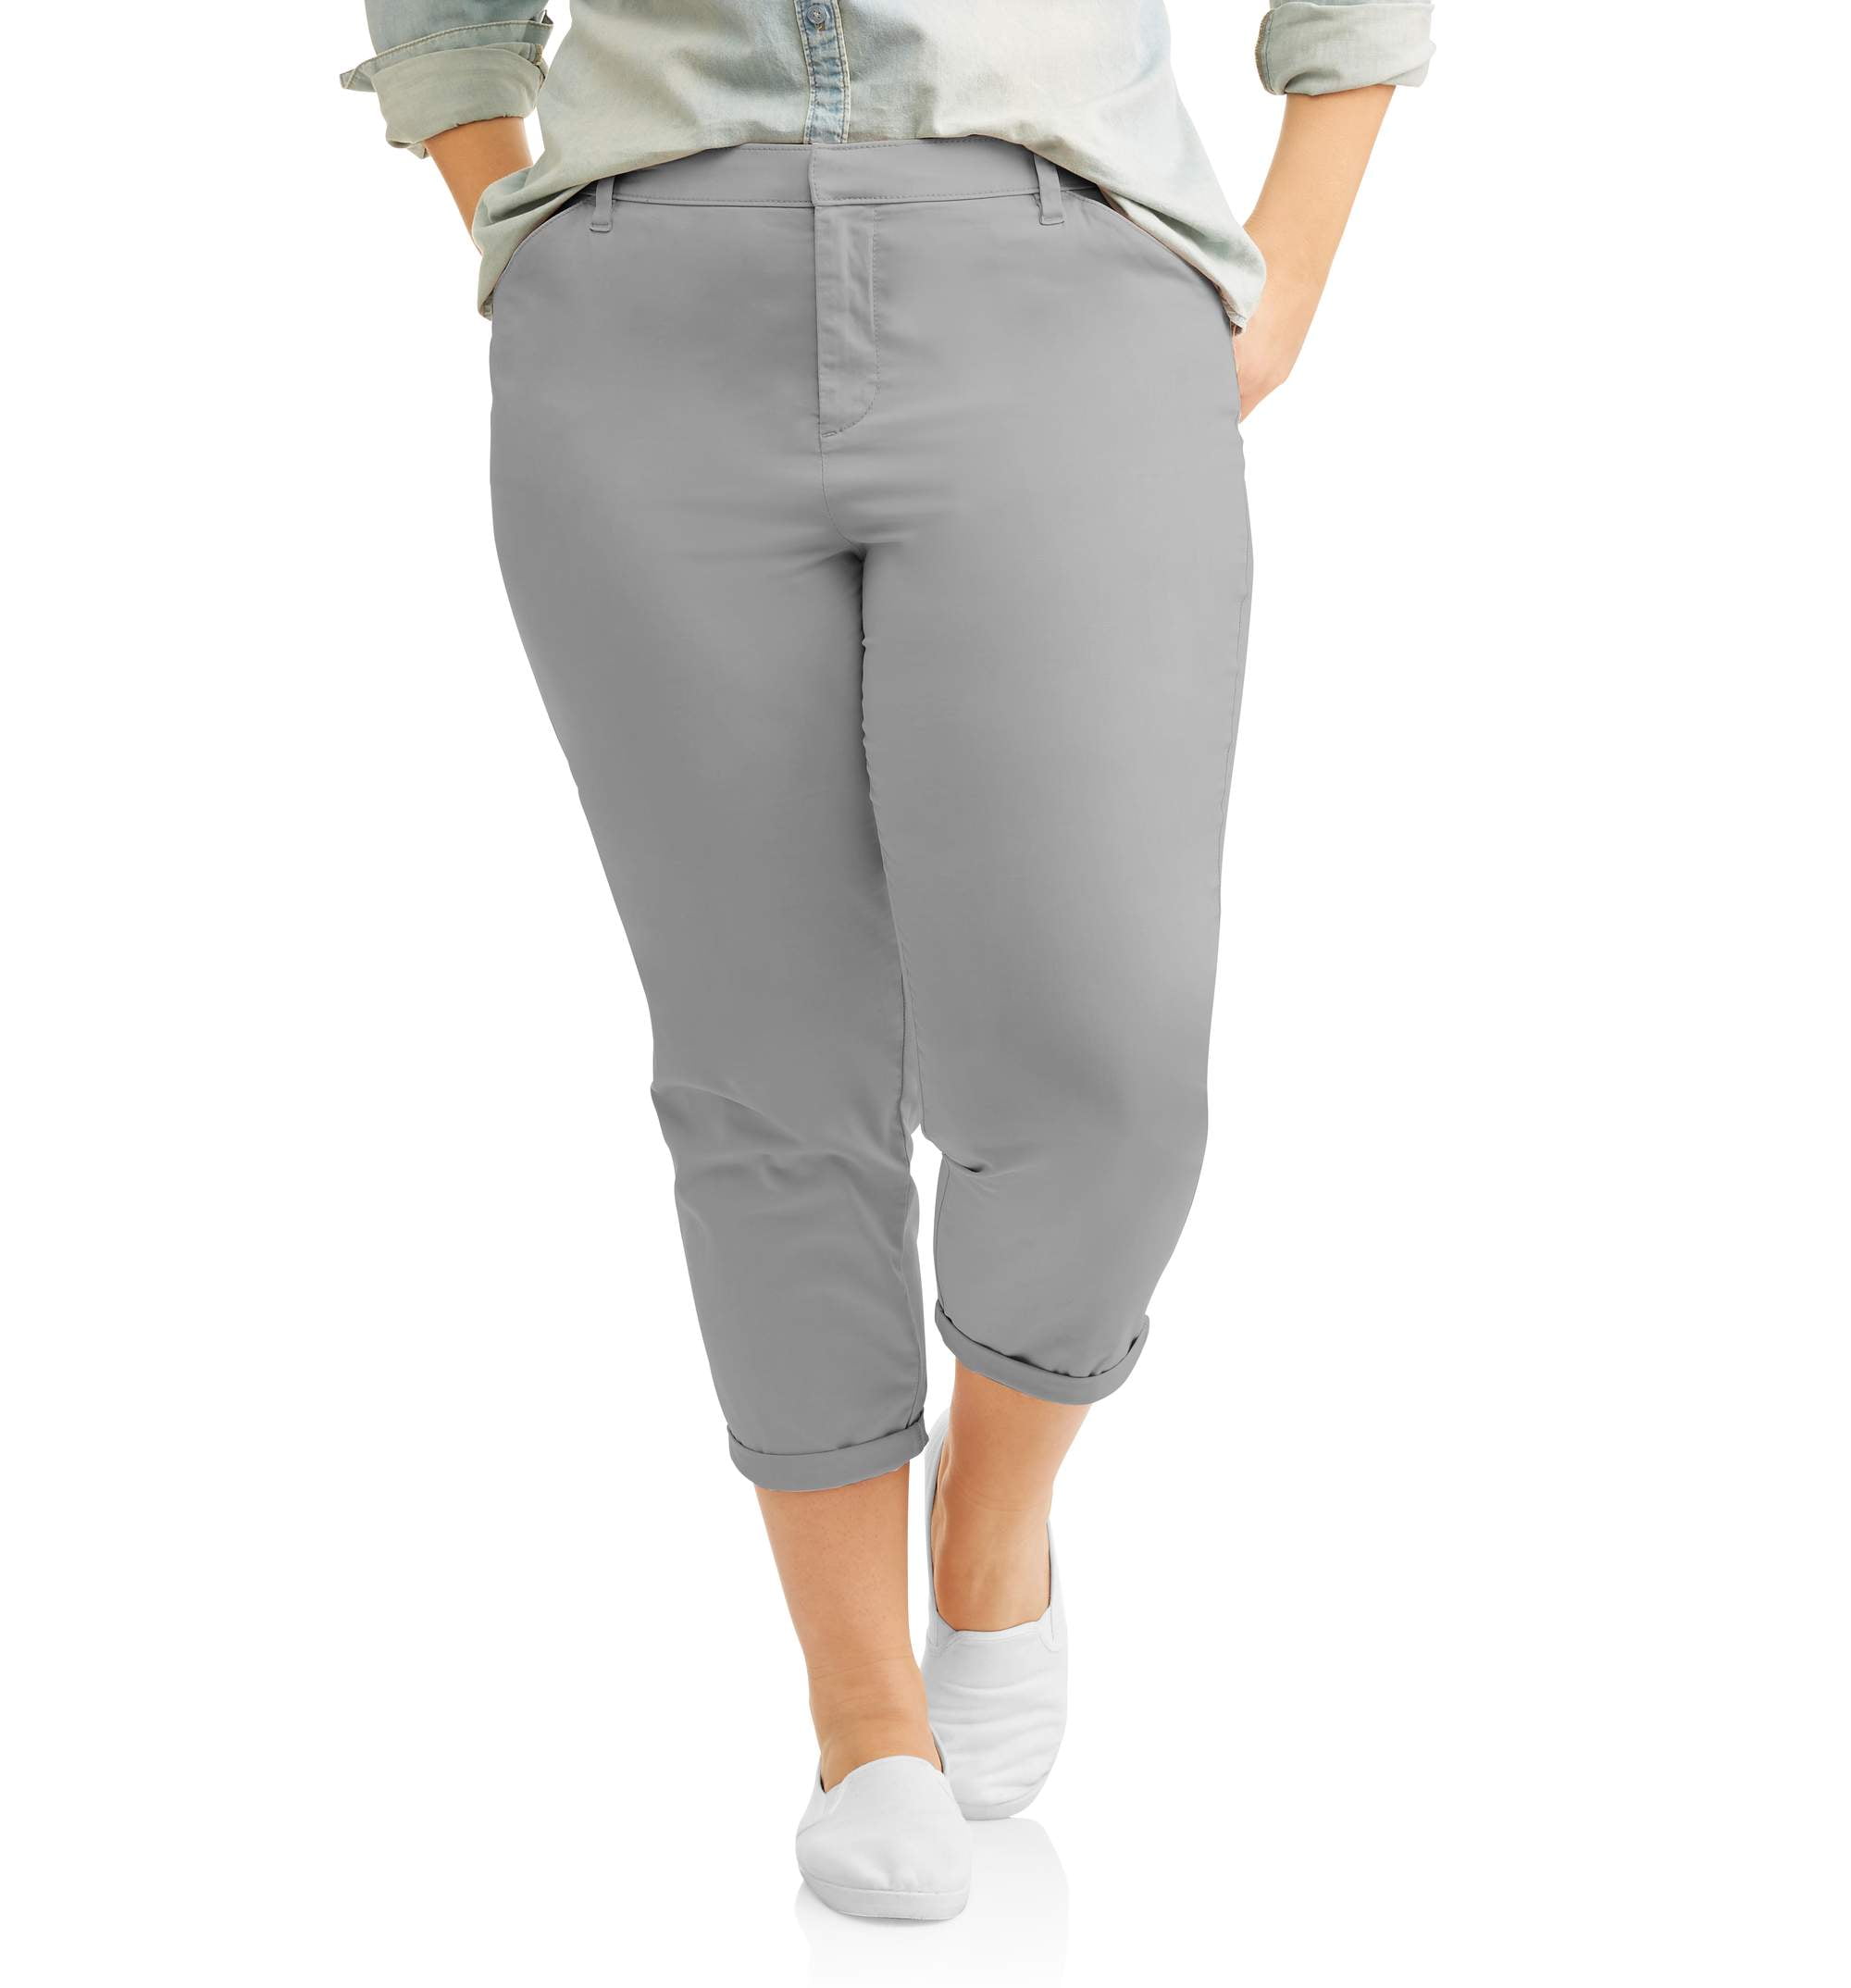 women's gray chino pants